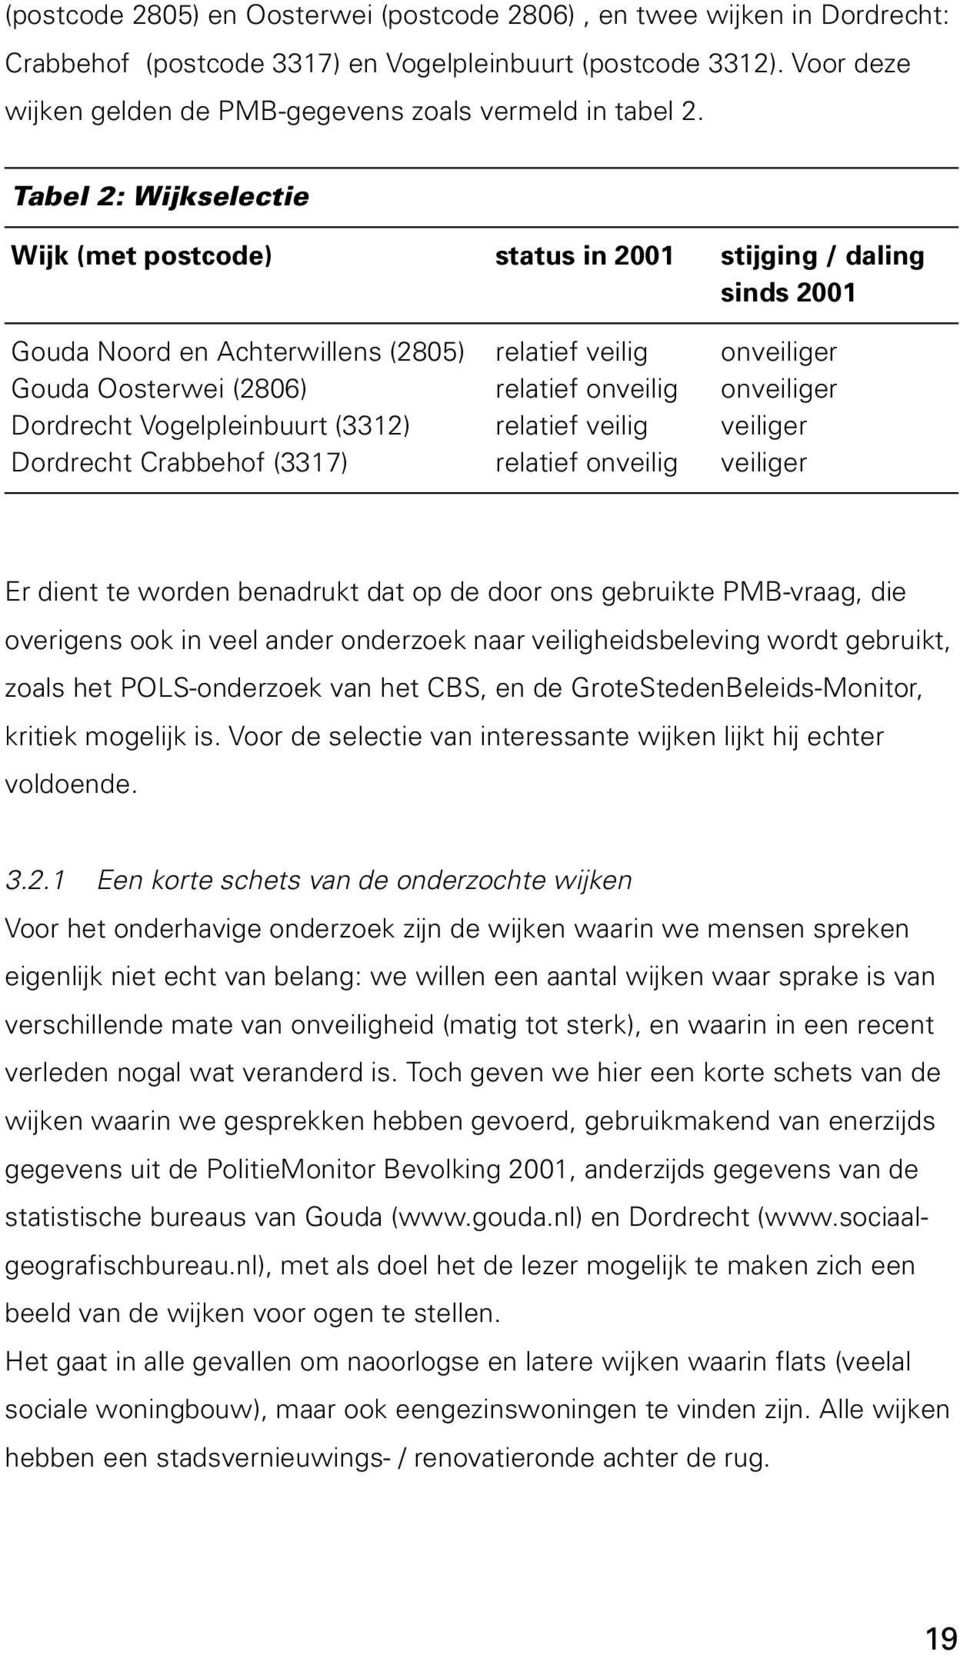 Tabel 2: Wijkselectie Wijk (met postcode) status in 2001 stijging / daling sinds 2001 Gouda Noord en Achterwillens (2805) Gouda Oosterwei (2806) Dordrecht Vogelpleinbuurt (3312) Dordrecht Crabbehof